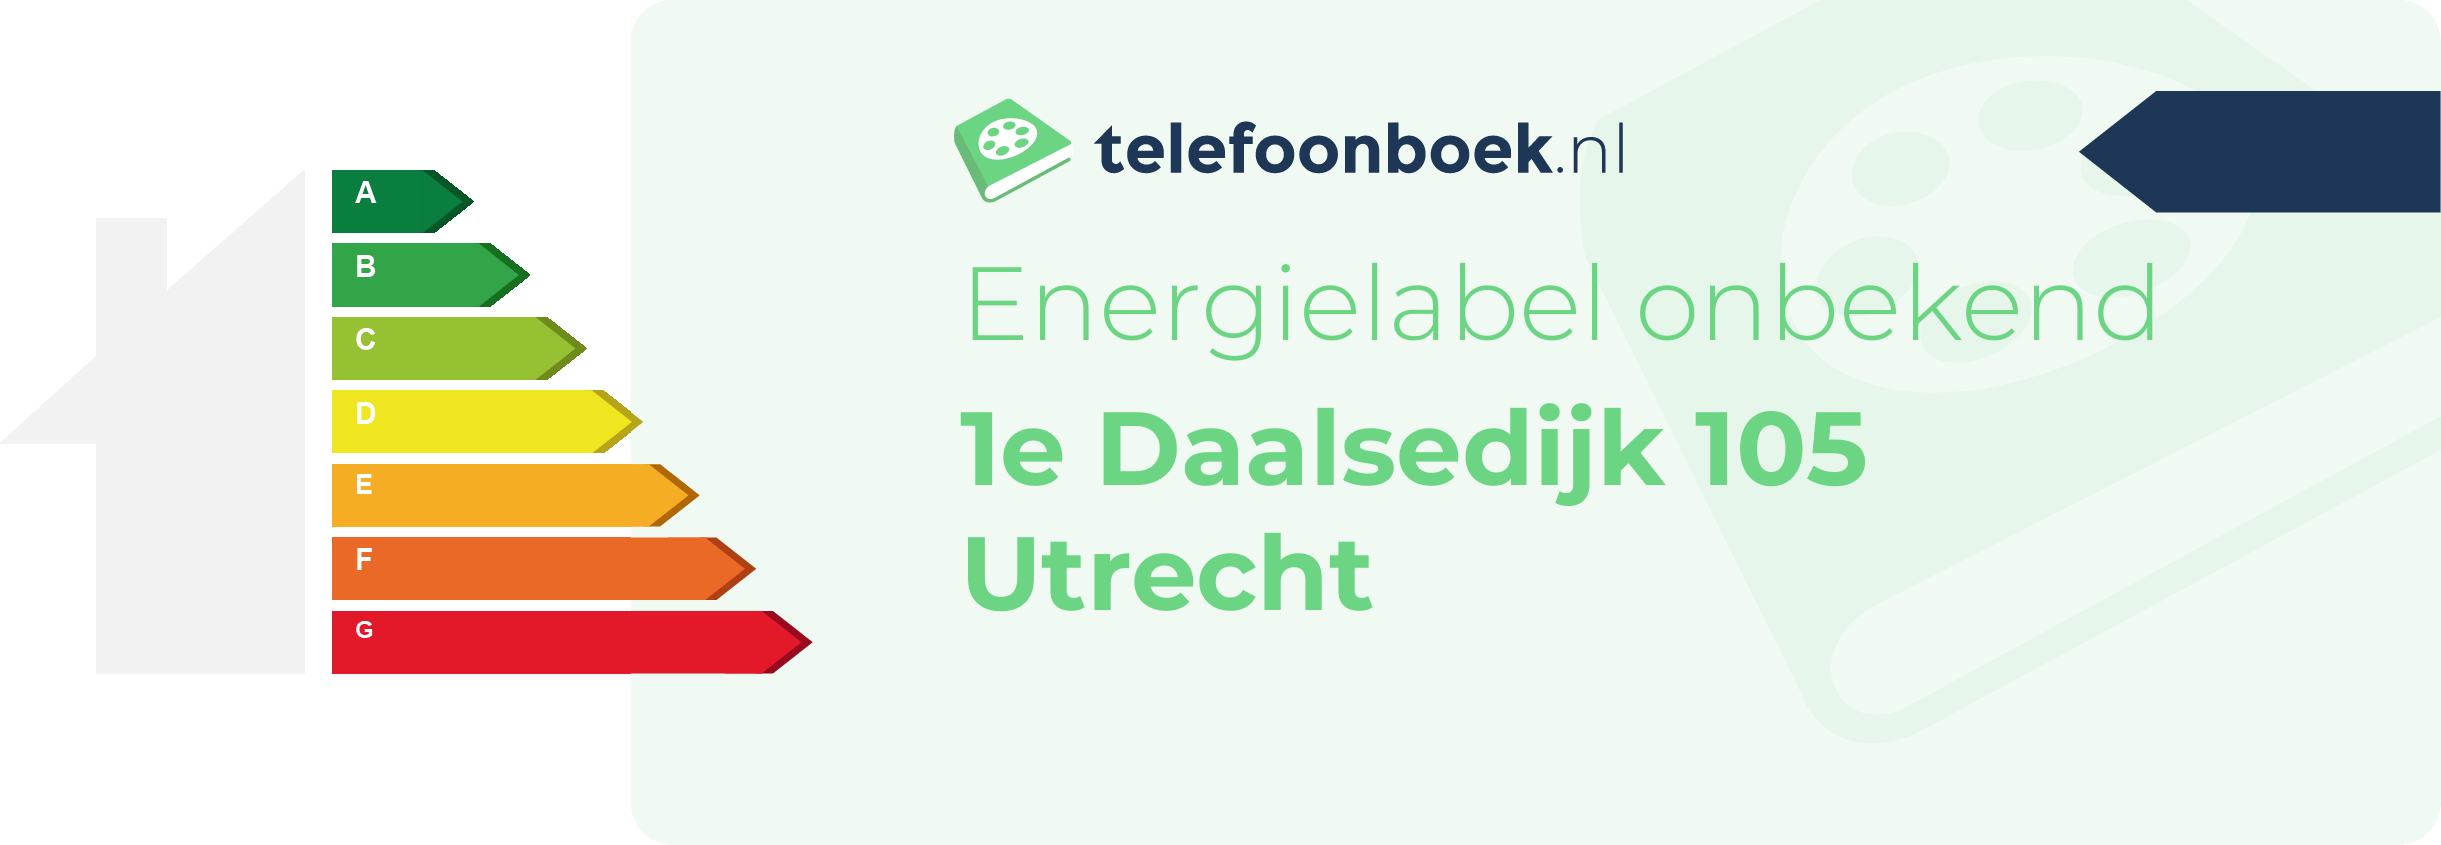 Energielabel 1e Daalsedijk 105 Utrecht